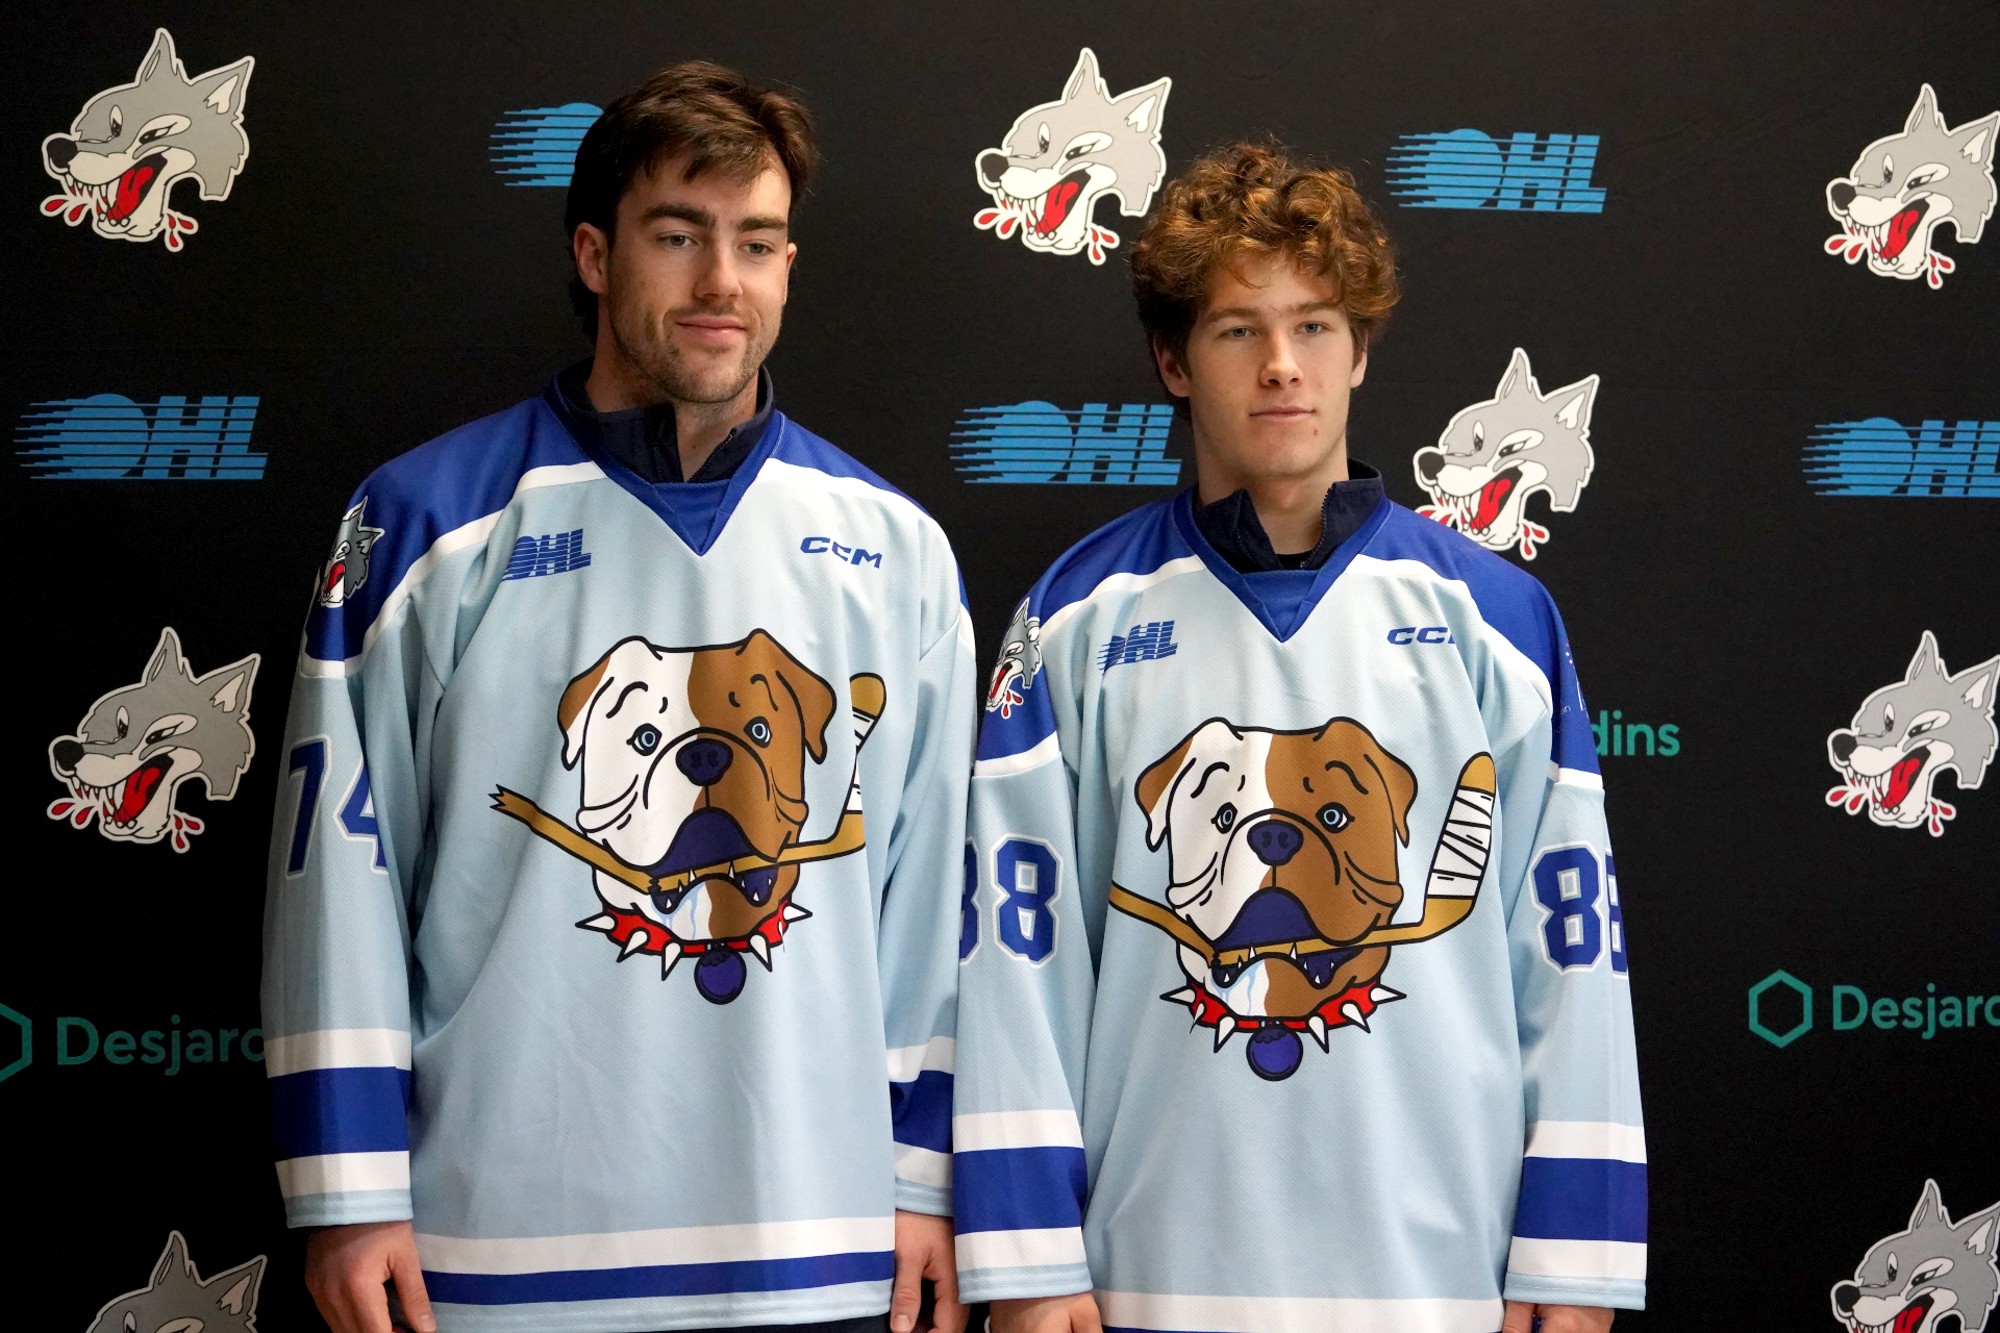 SHORESY Sudbury Blueberry Bulldogs Hockey Jersey With Your 